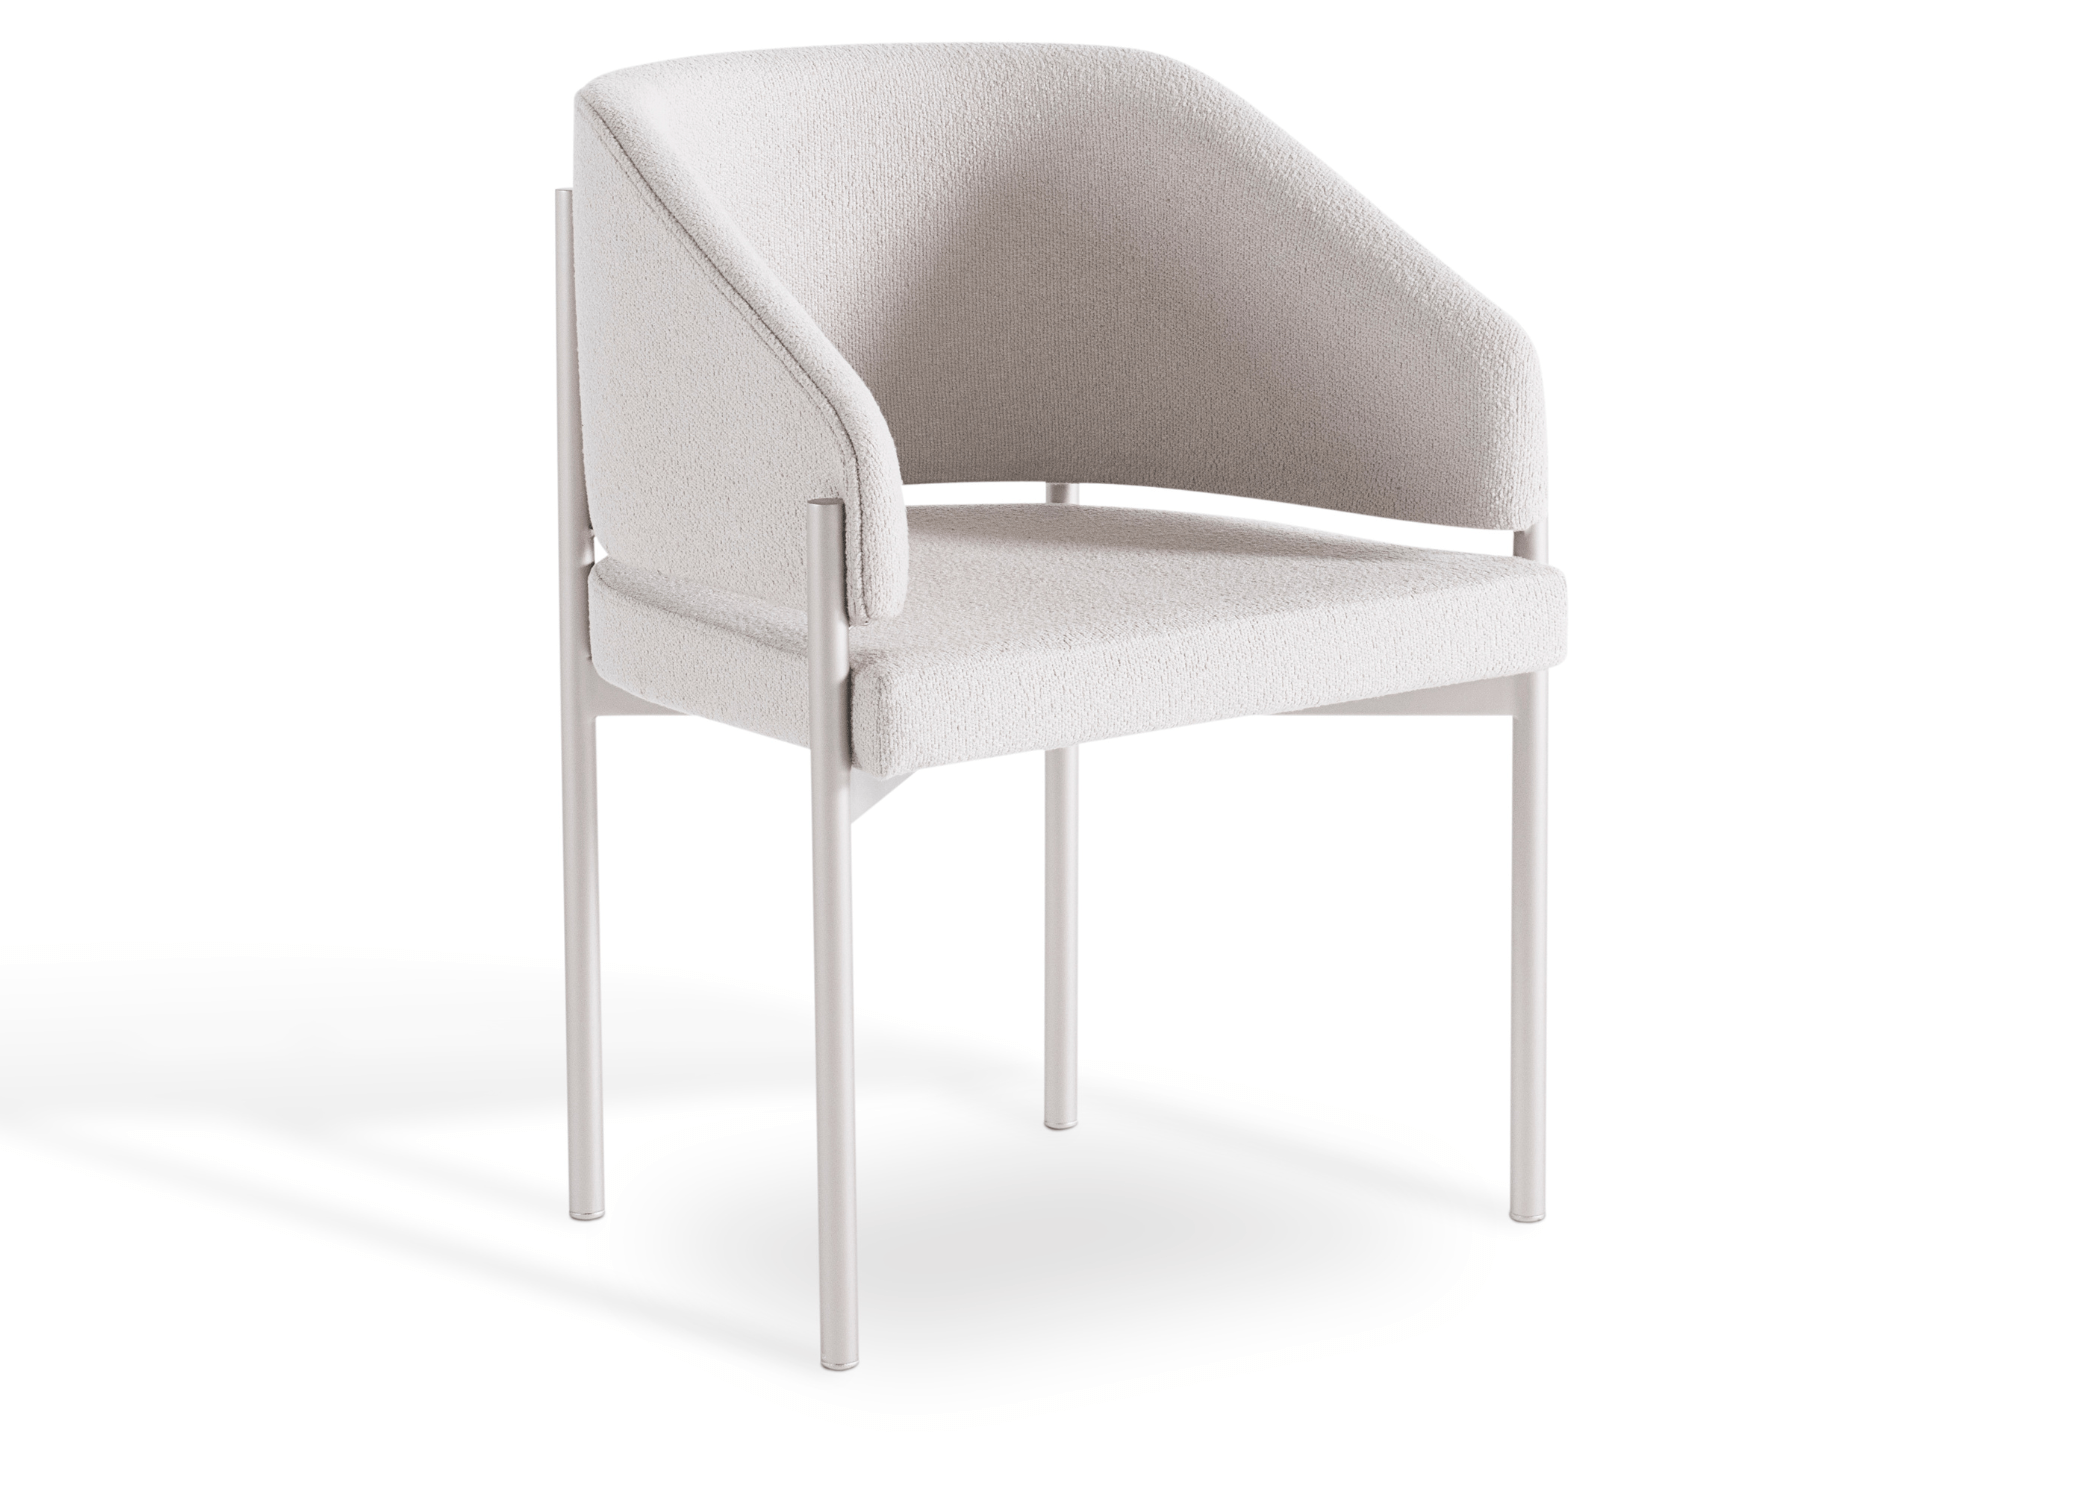 Cadeira Leka vista de frente, destacando seu design geométrico e materiais luxuosos.